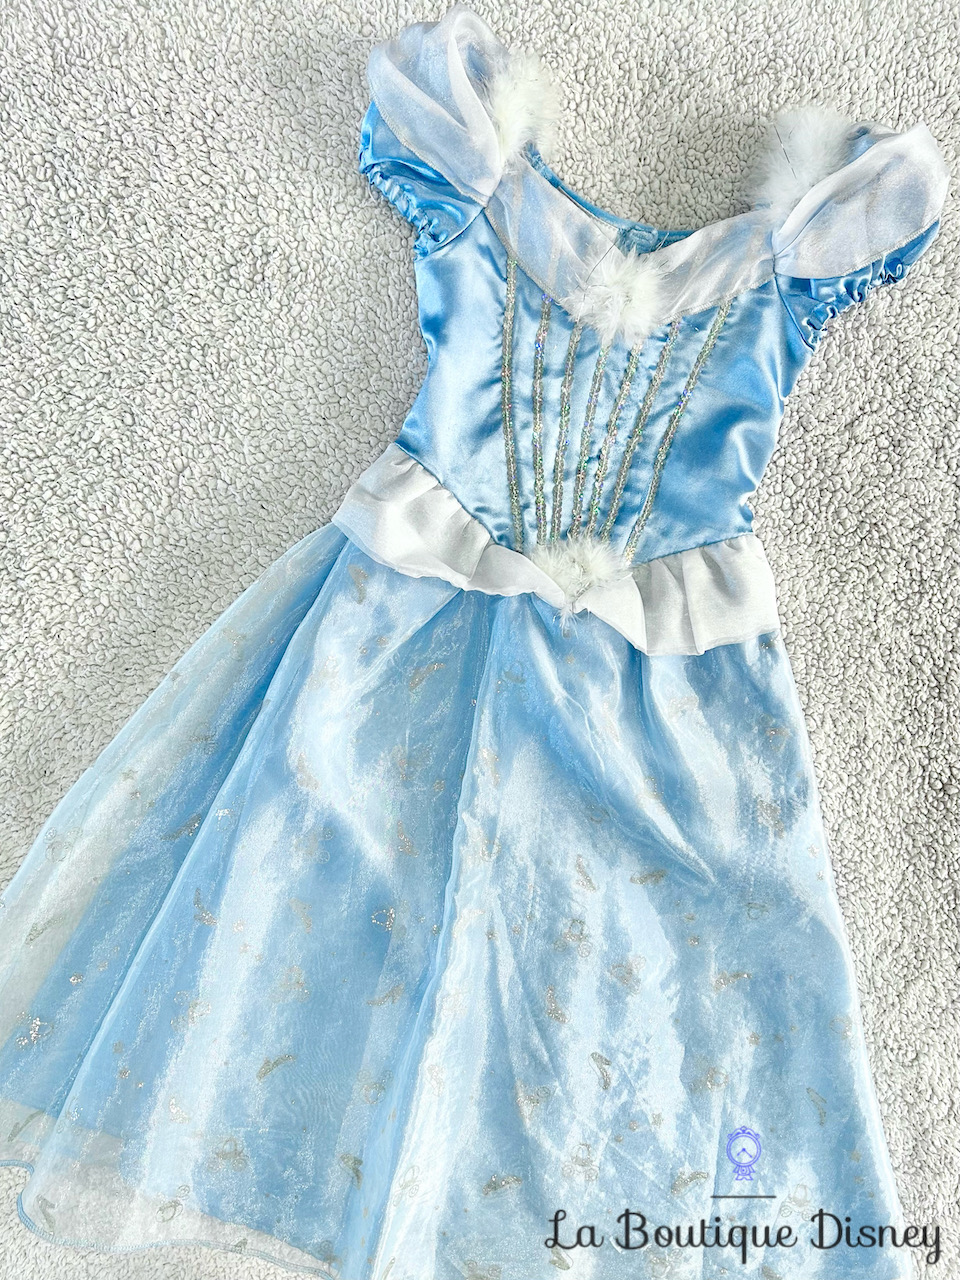 Déguisement Cendrillon Disneyland Paris Disney taille 4 ans robe princesse bleu